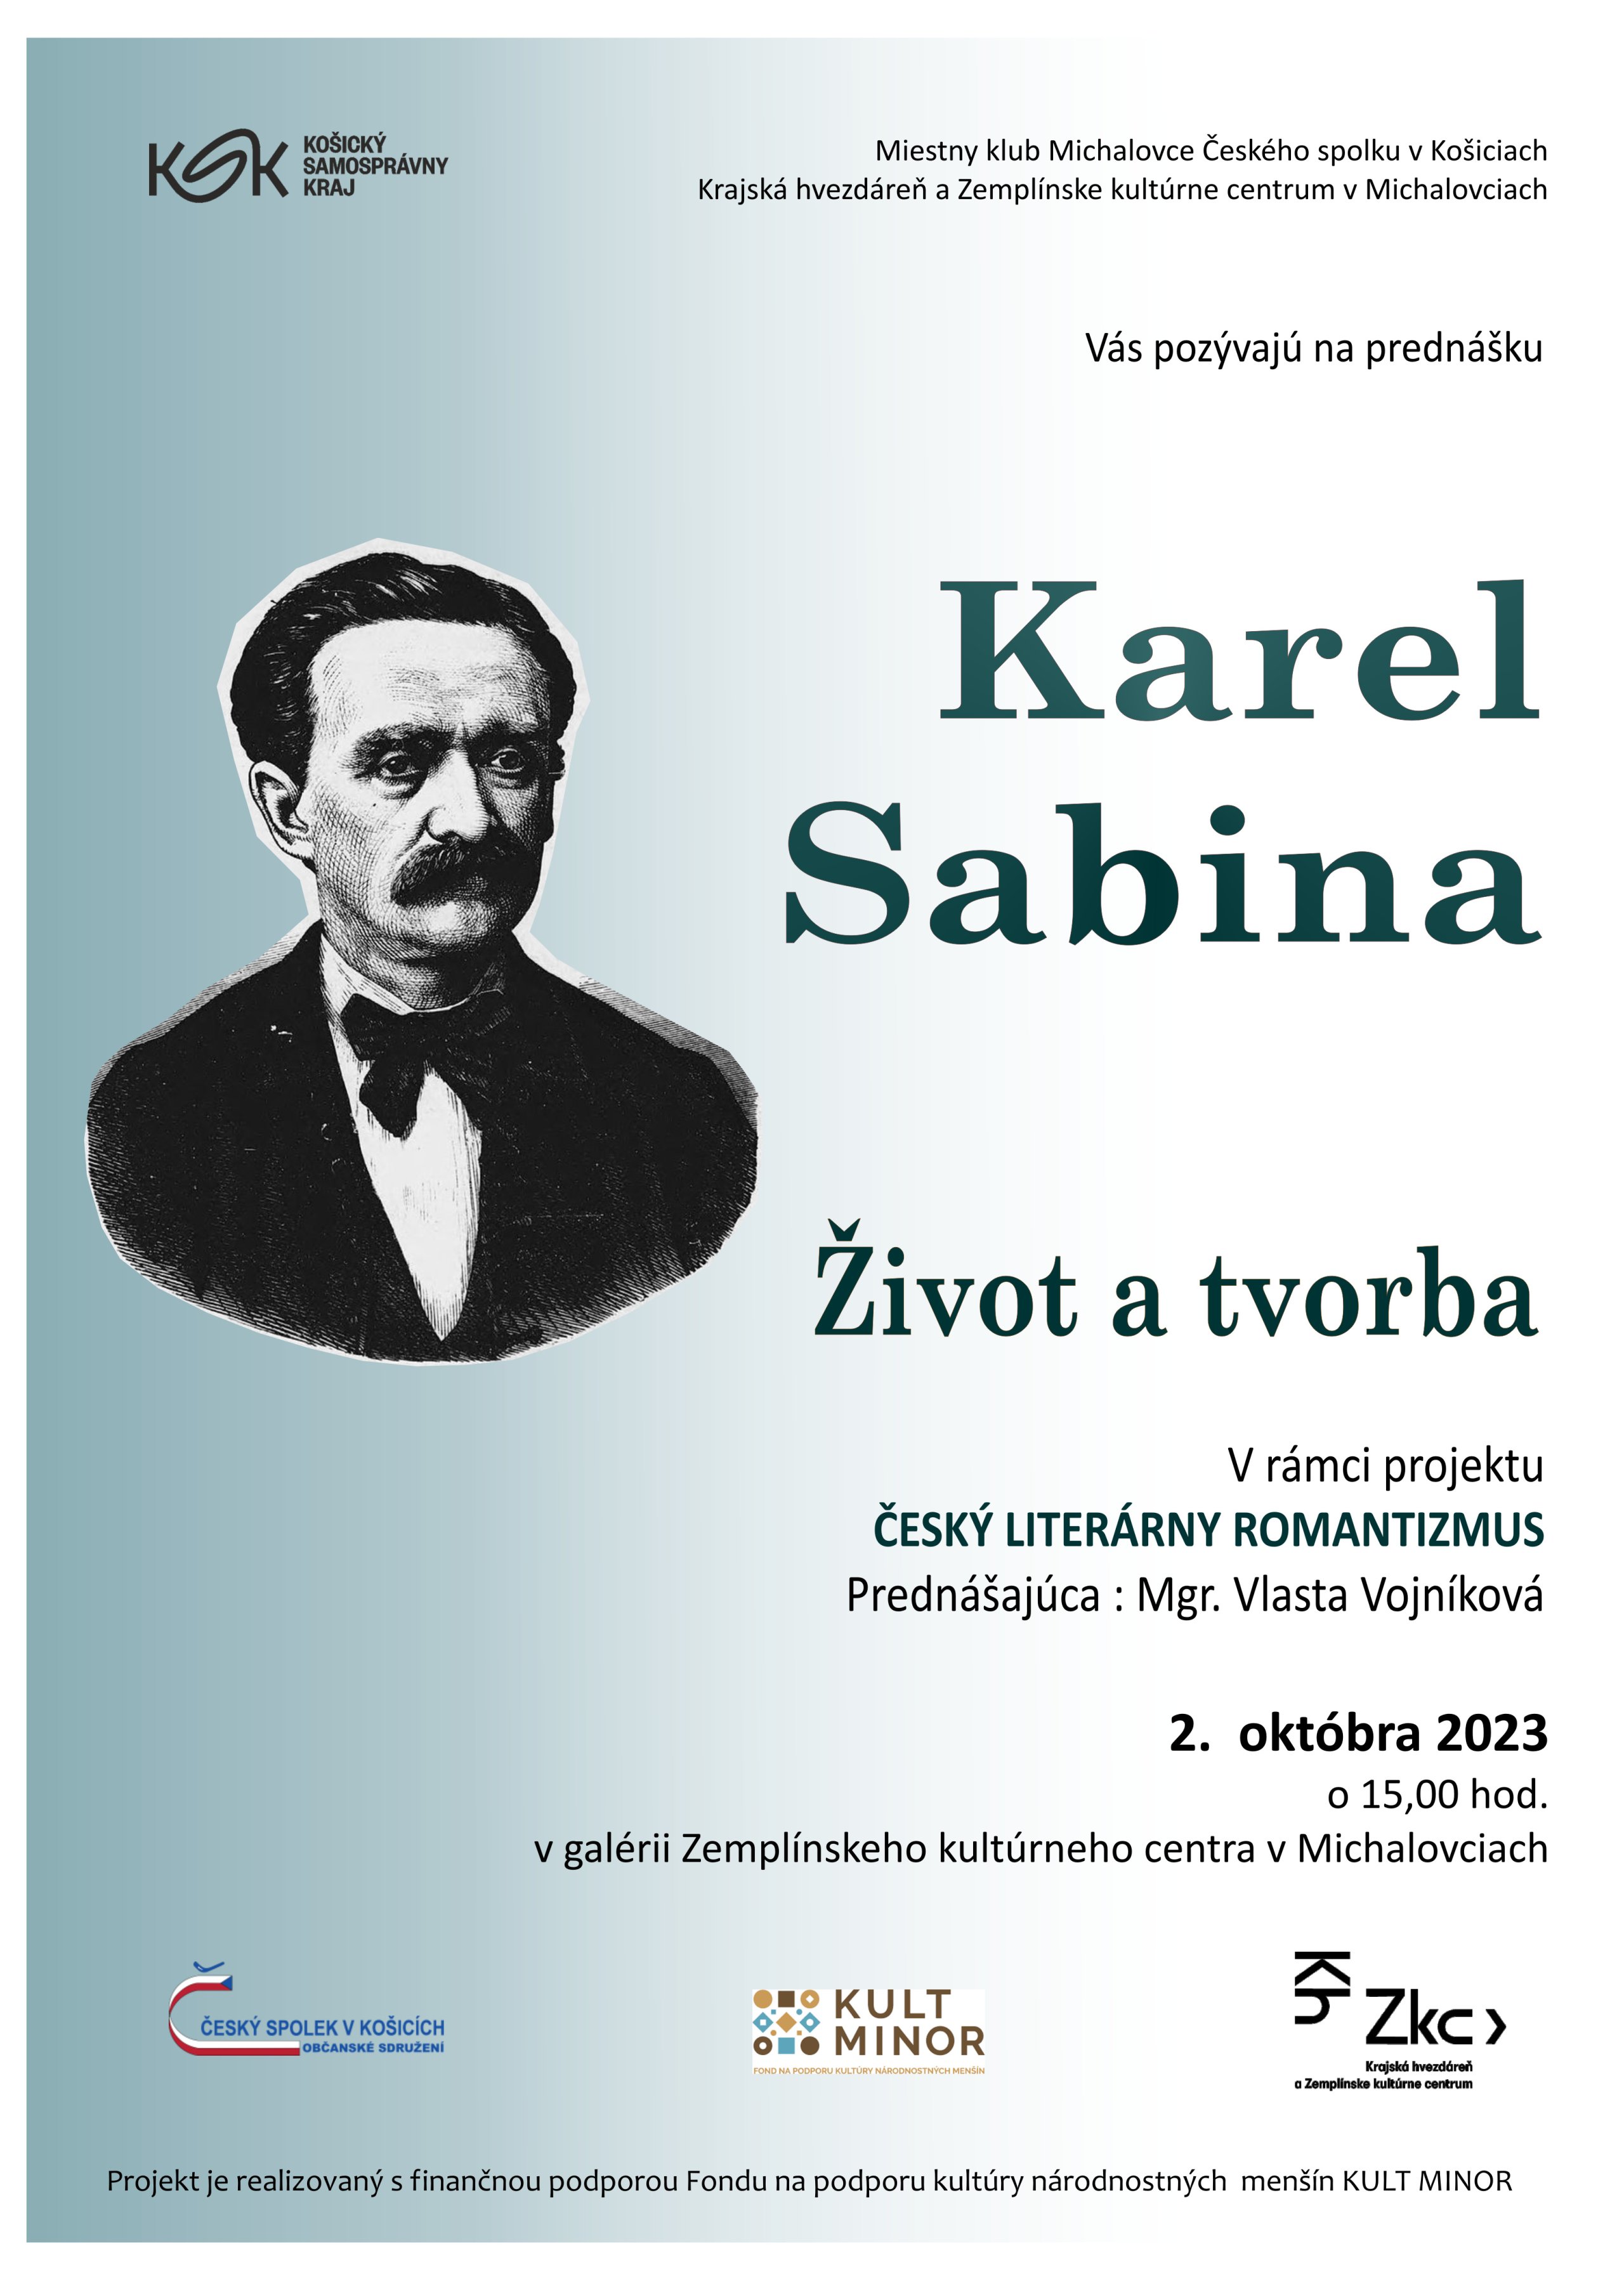 Karel Sabina - život a tvorba